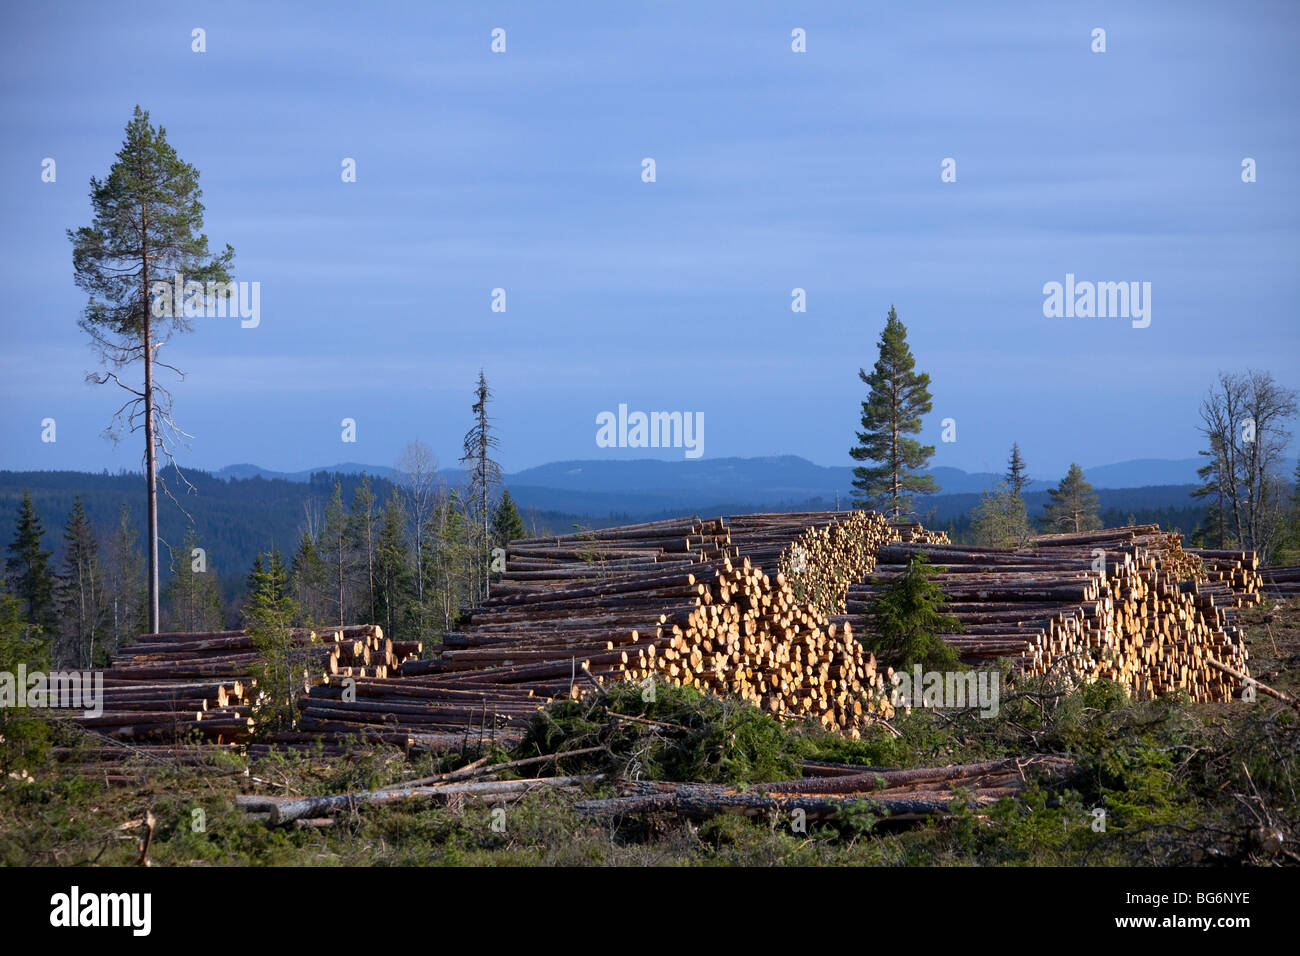 La déforestation provoquée par l'industrie forestière montrant des piles de journaux de coupe / arbres / bois de forêt de pins, la Suède Banque D'Images